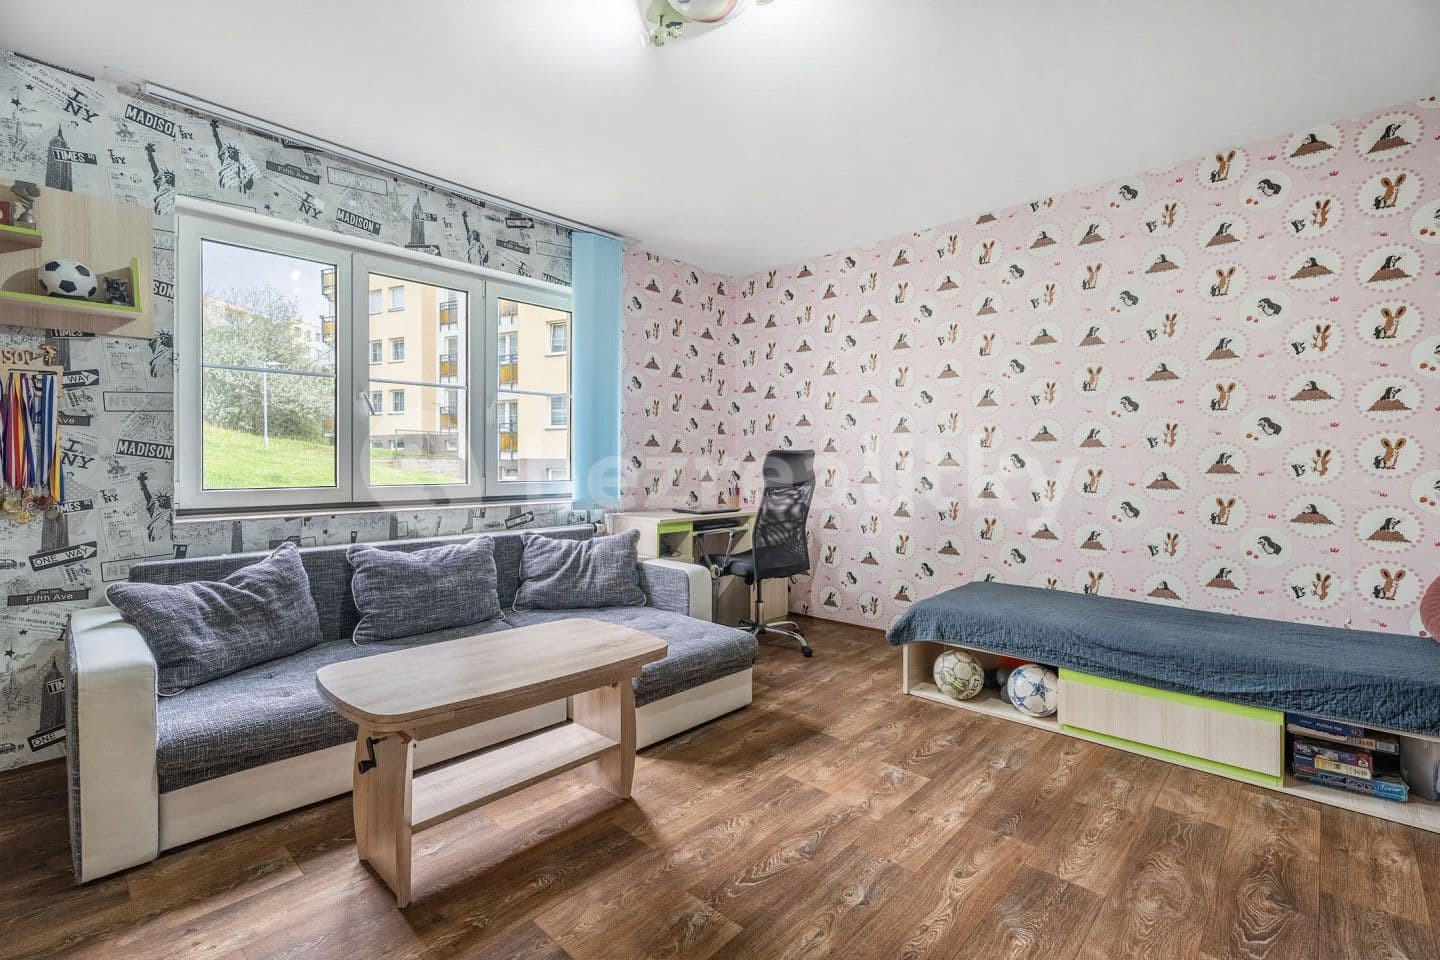 2 bedroom flat for sale, 62 m², Stradovská, Chlumec, Ústecký Region